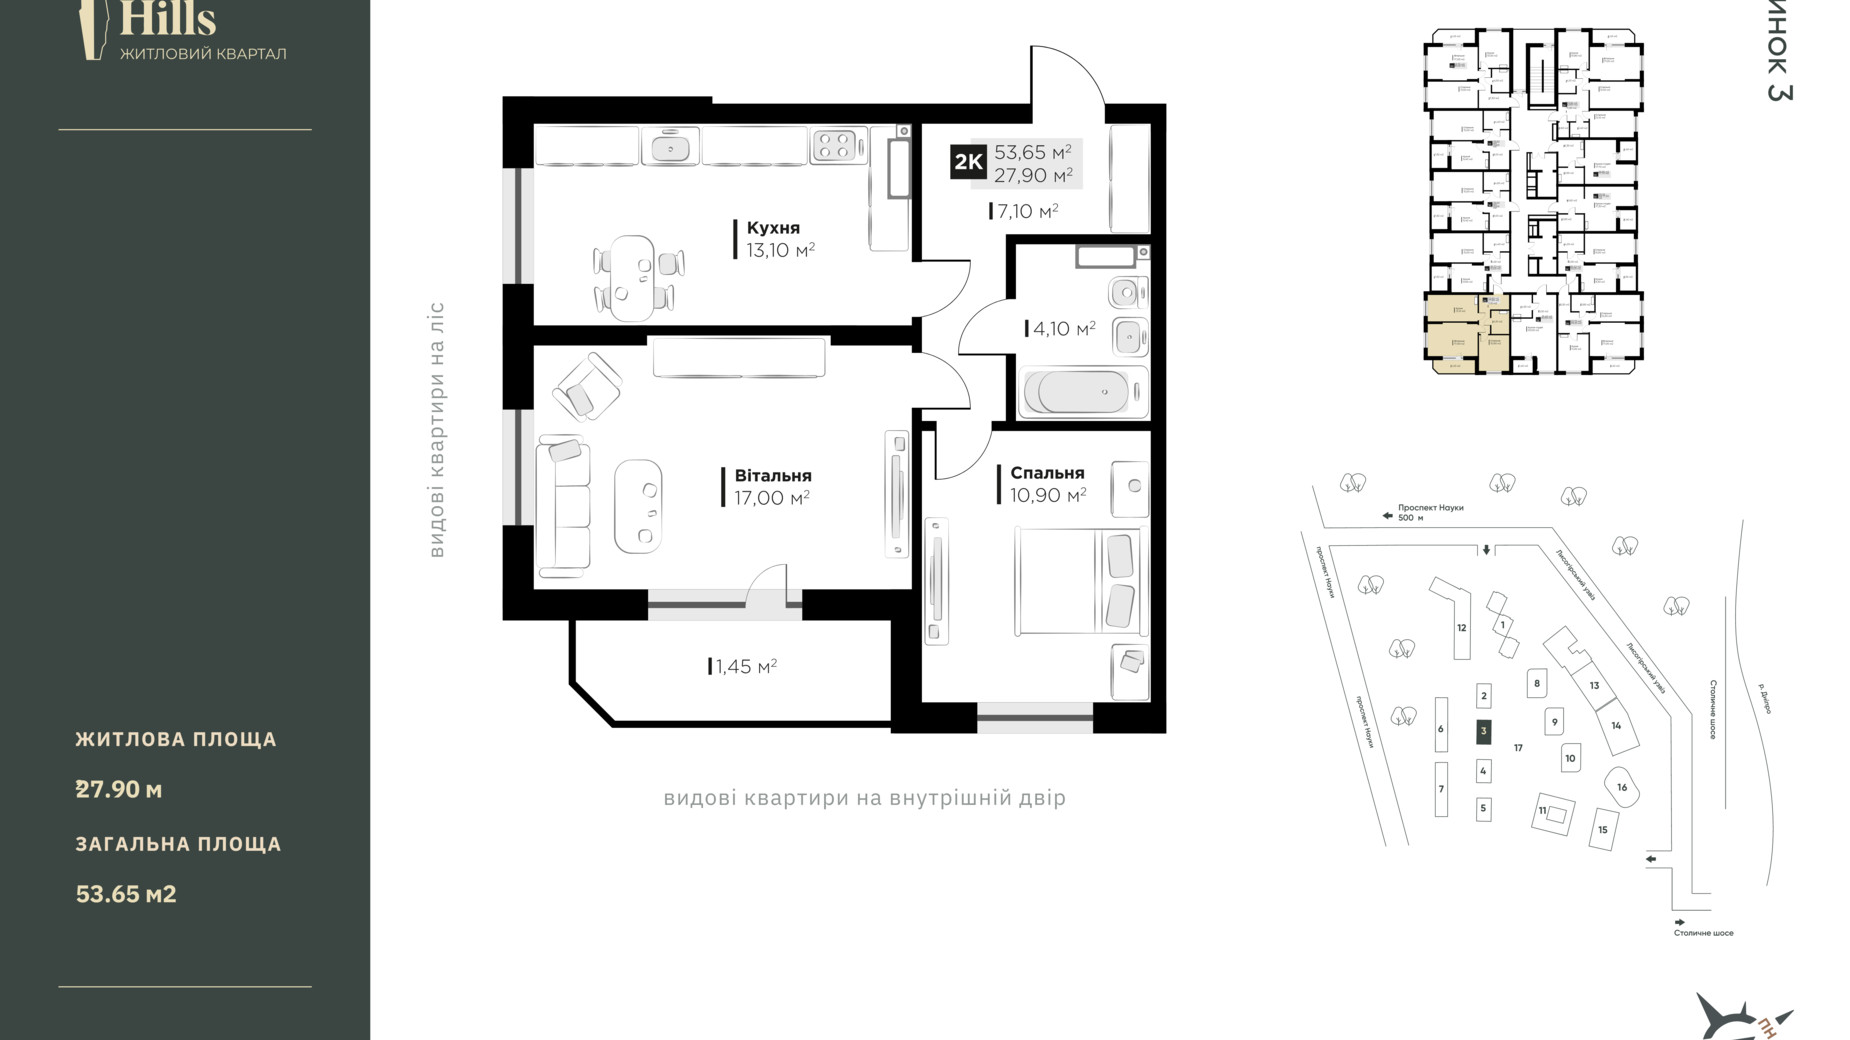 Планировка 2-комнатной квартиры в ЖК Central Hills 53.65 м², фото 510693